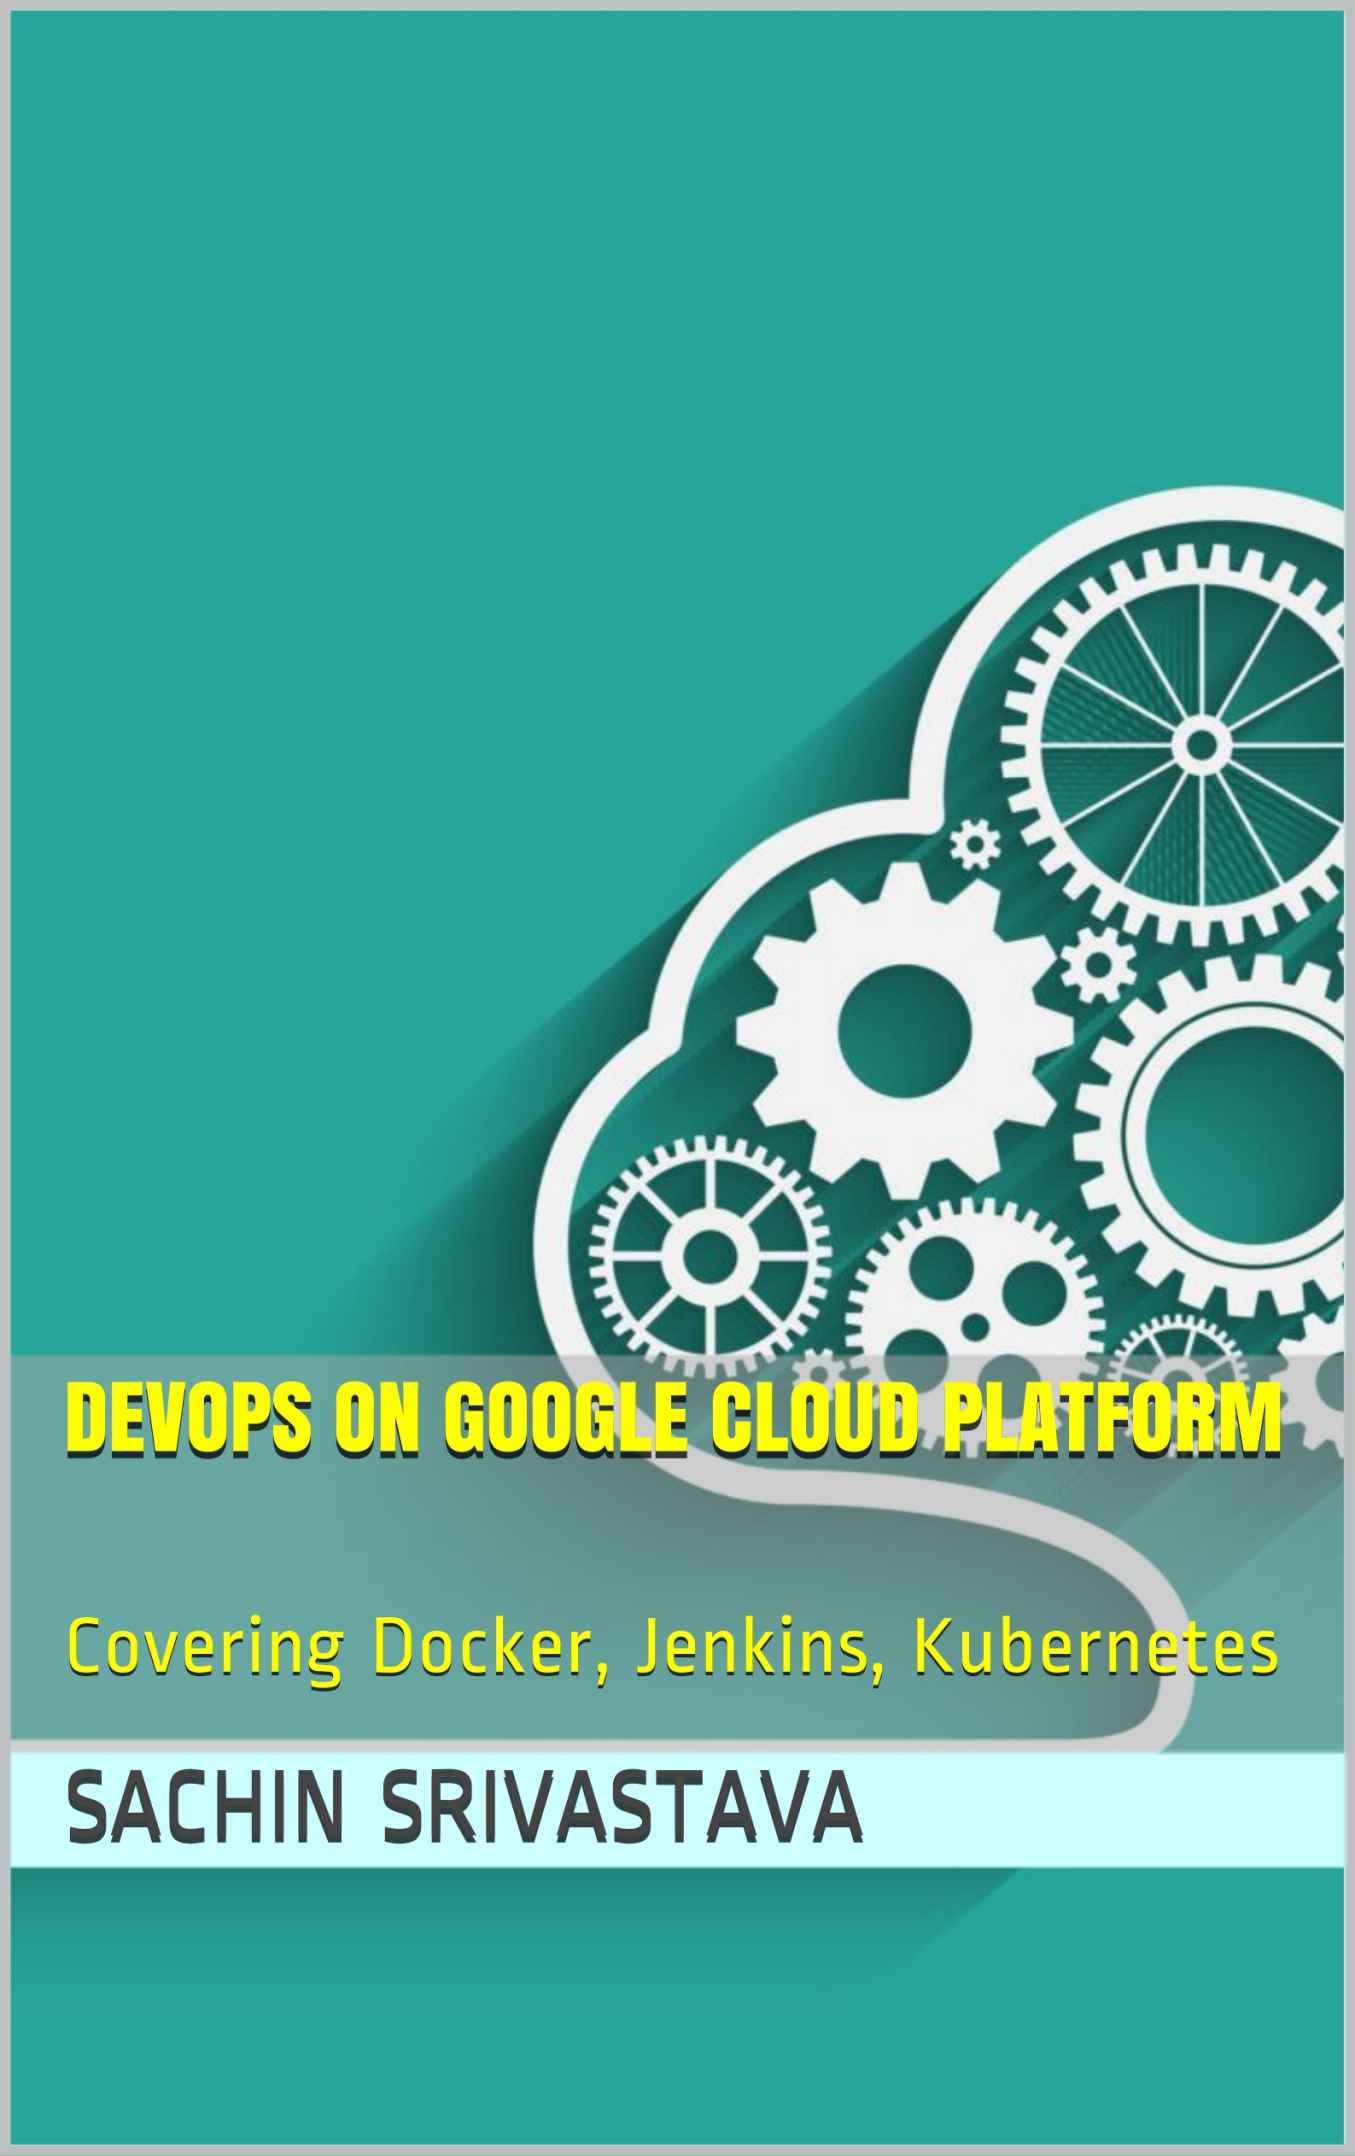 DevOps on Google Cloud Platform: Covering Docker, Jenkins, Kubernetes